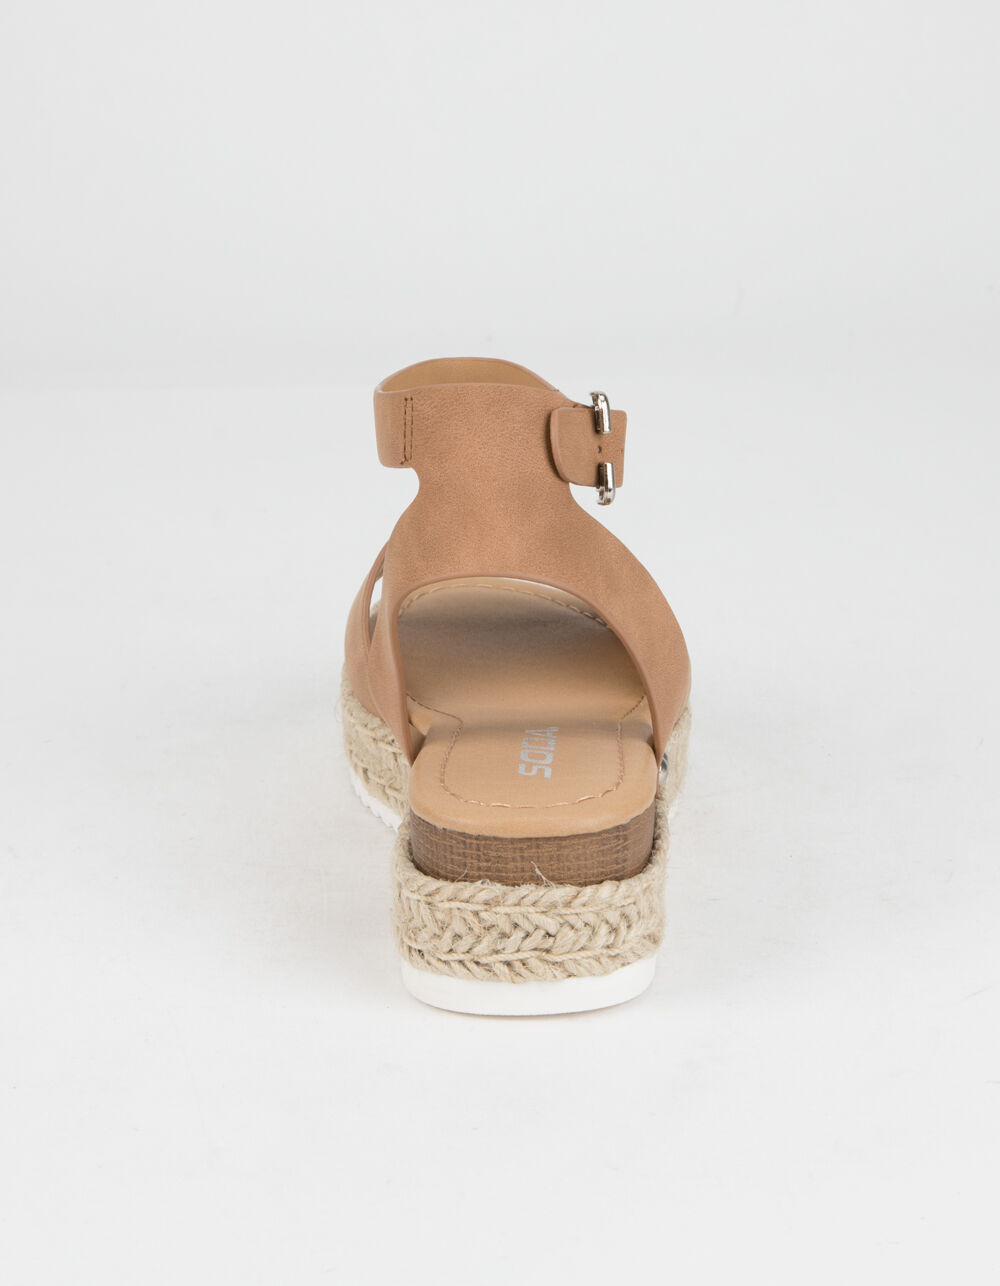 SODA Ankle Strap Girls Tan Espadrille Flatform Sandals - TAN | Tillys